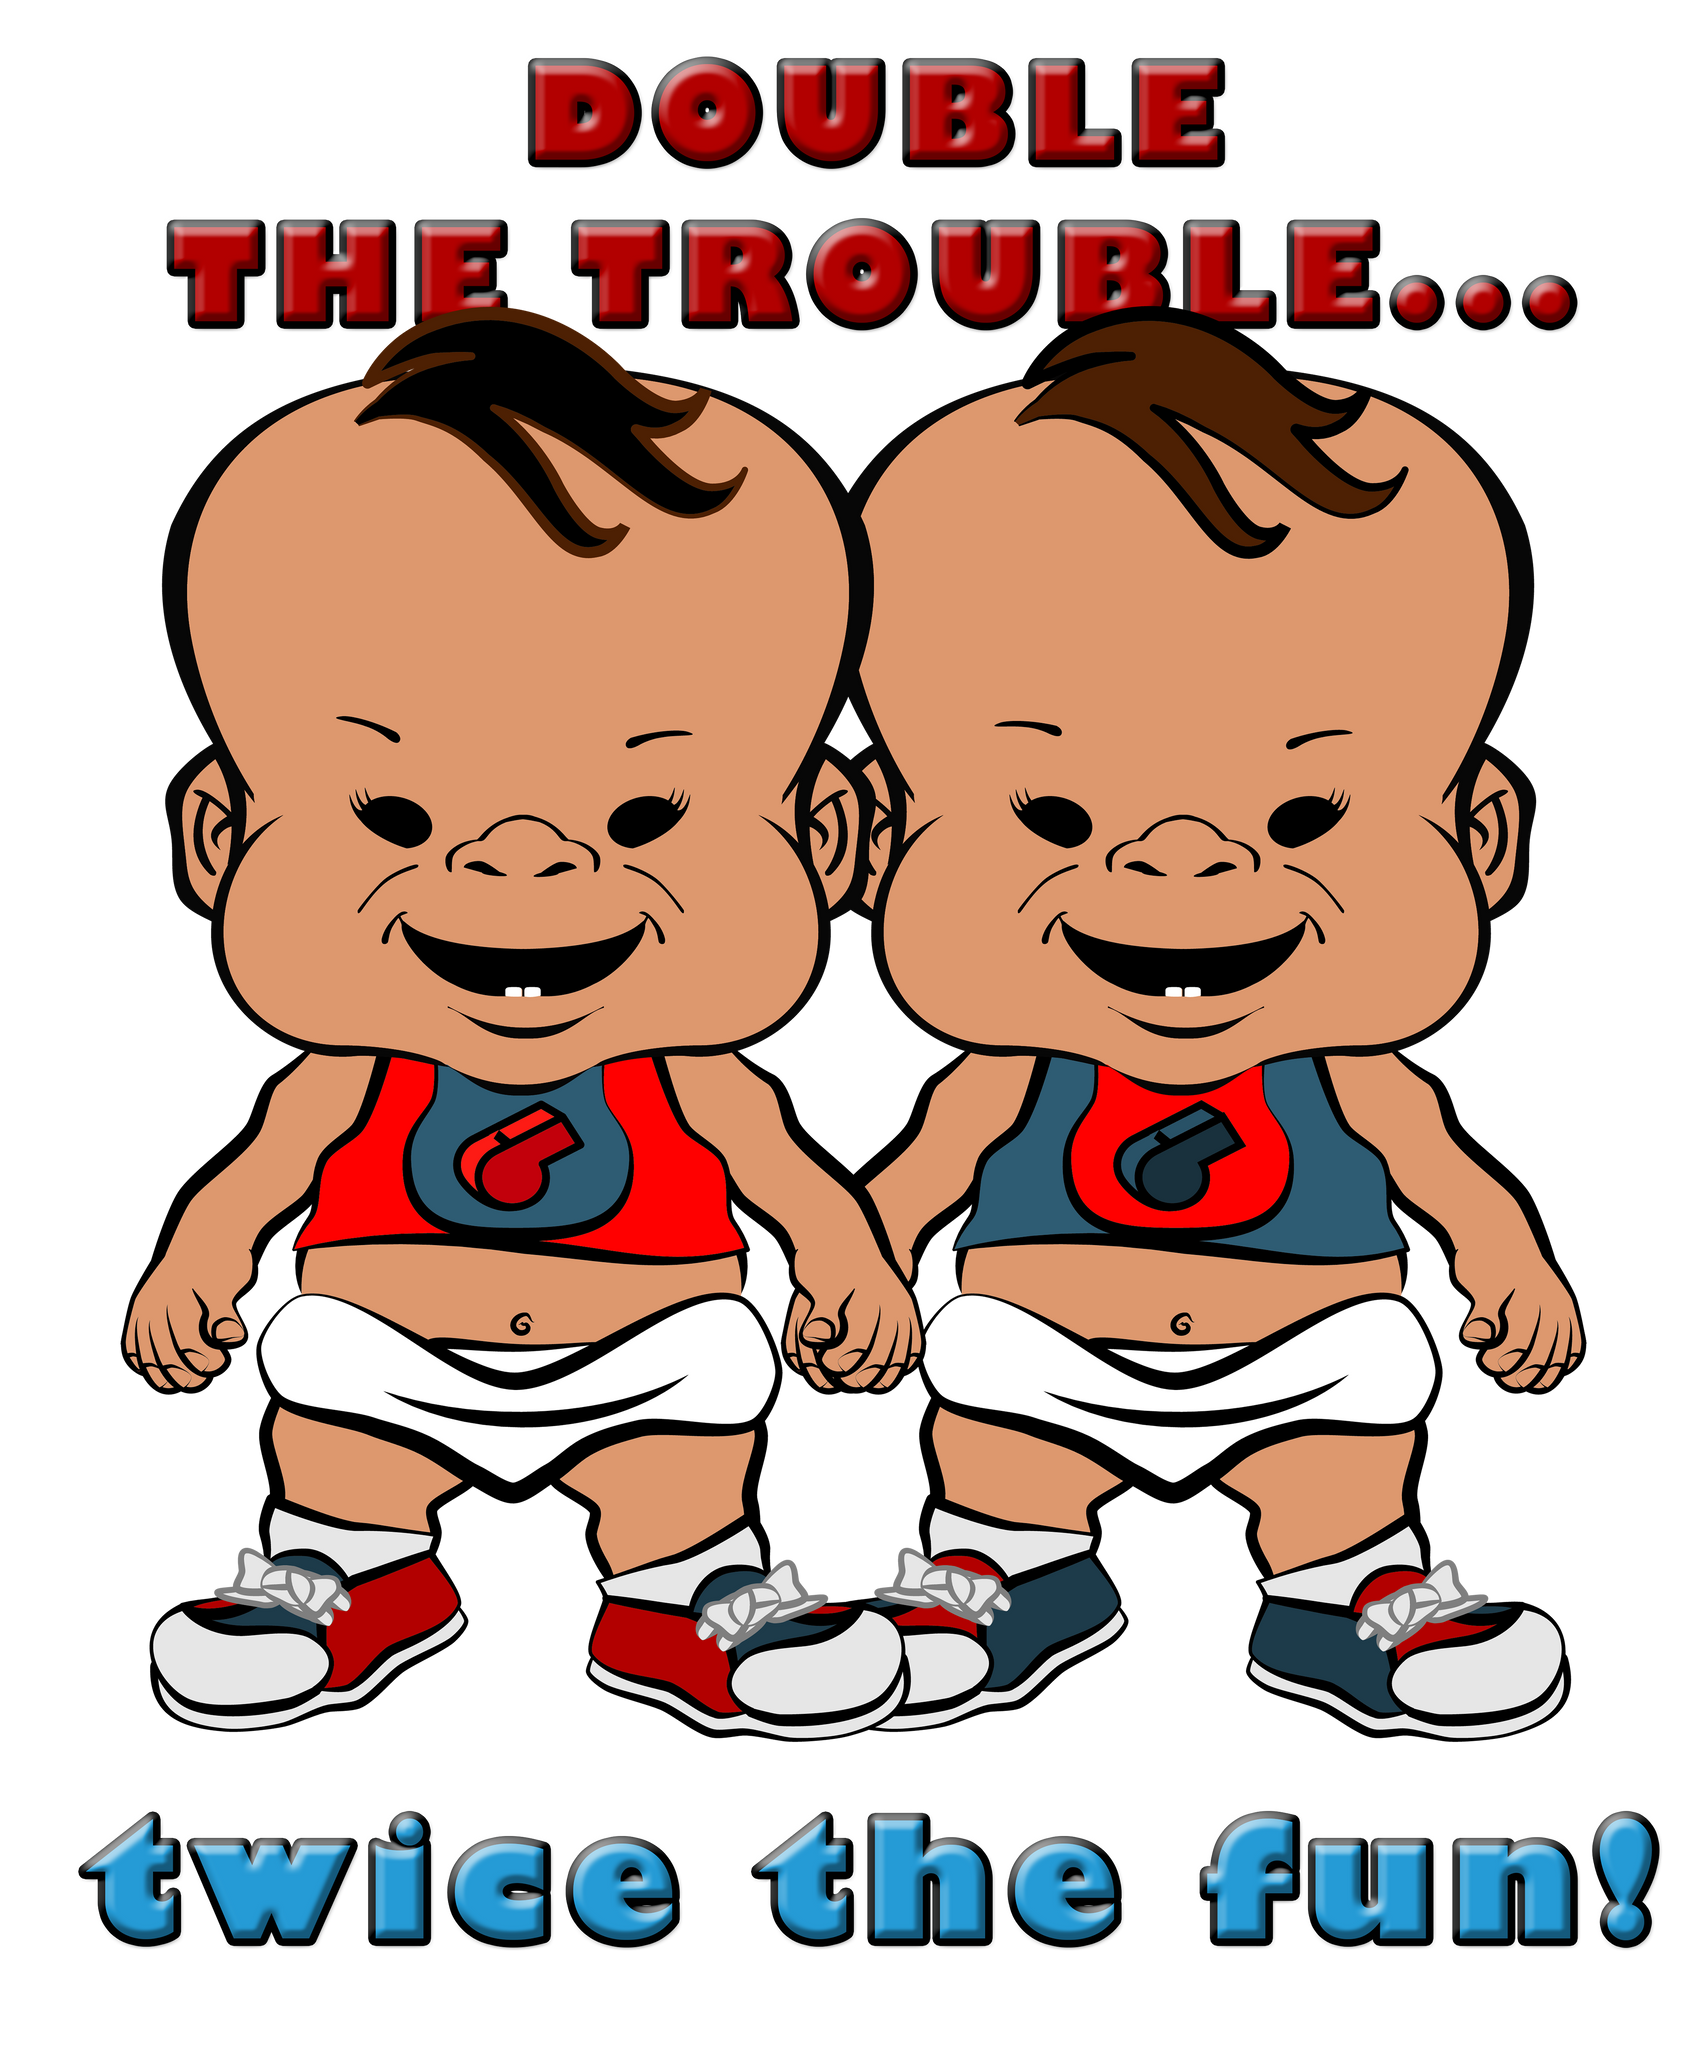 PBTZ0046_double_trouble_1_twins